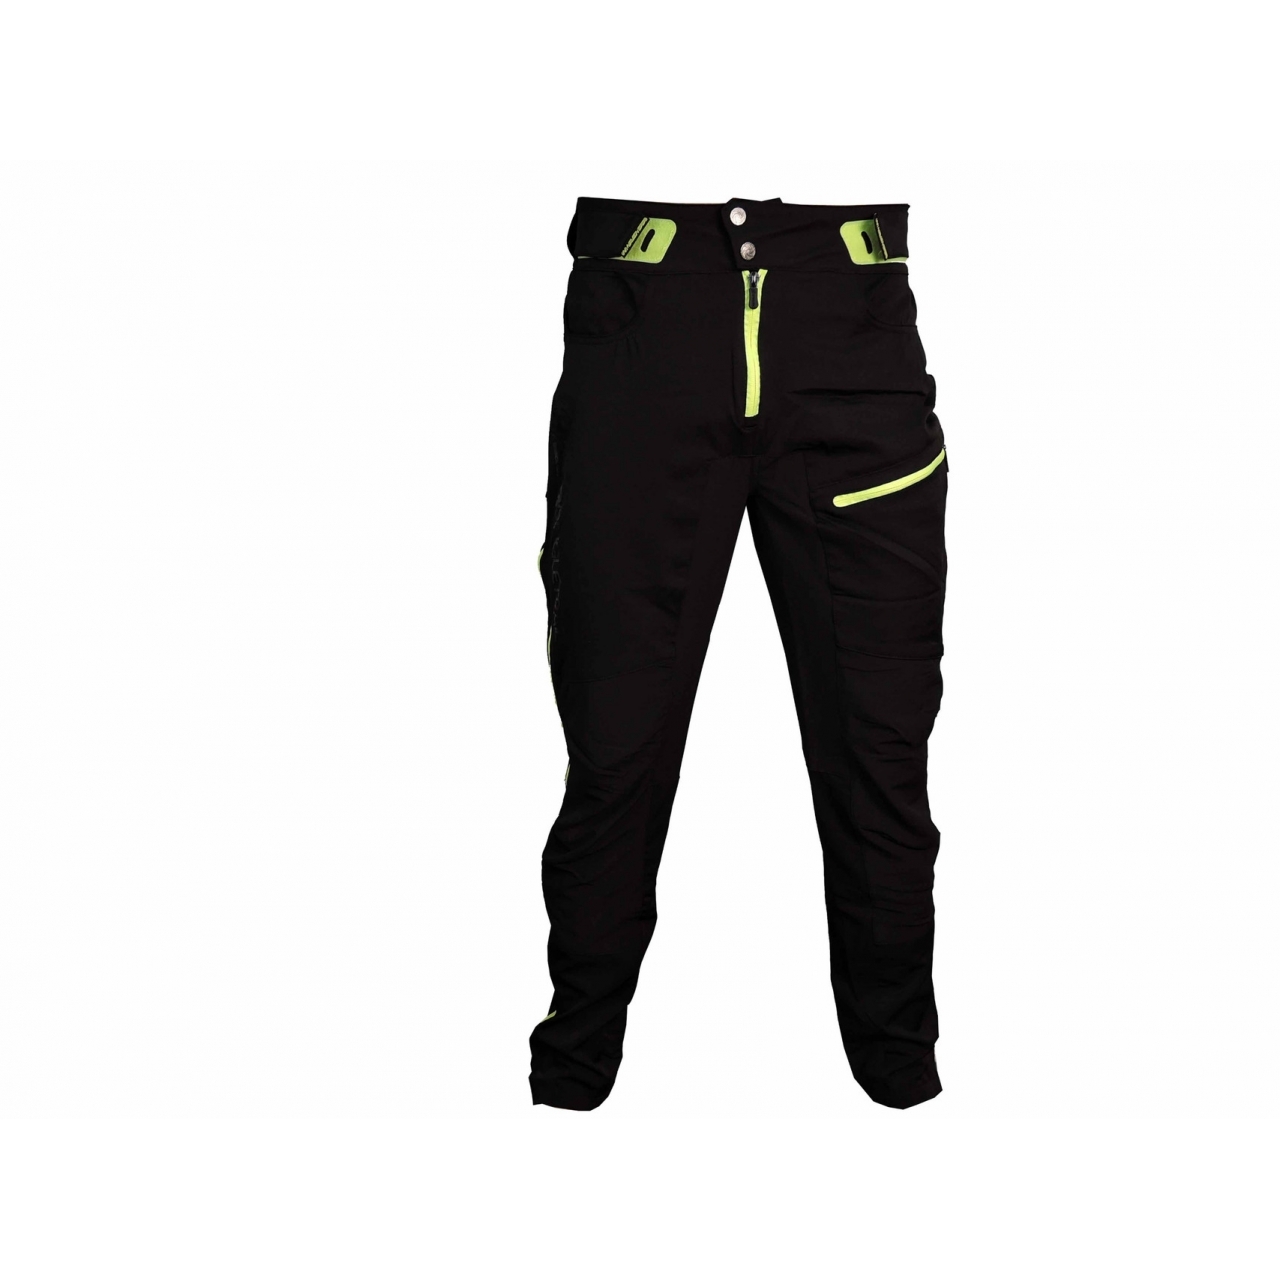 Kalhoty unisex Haven Singletrail - černé-zelené, S